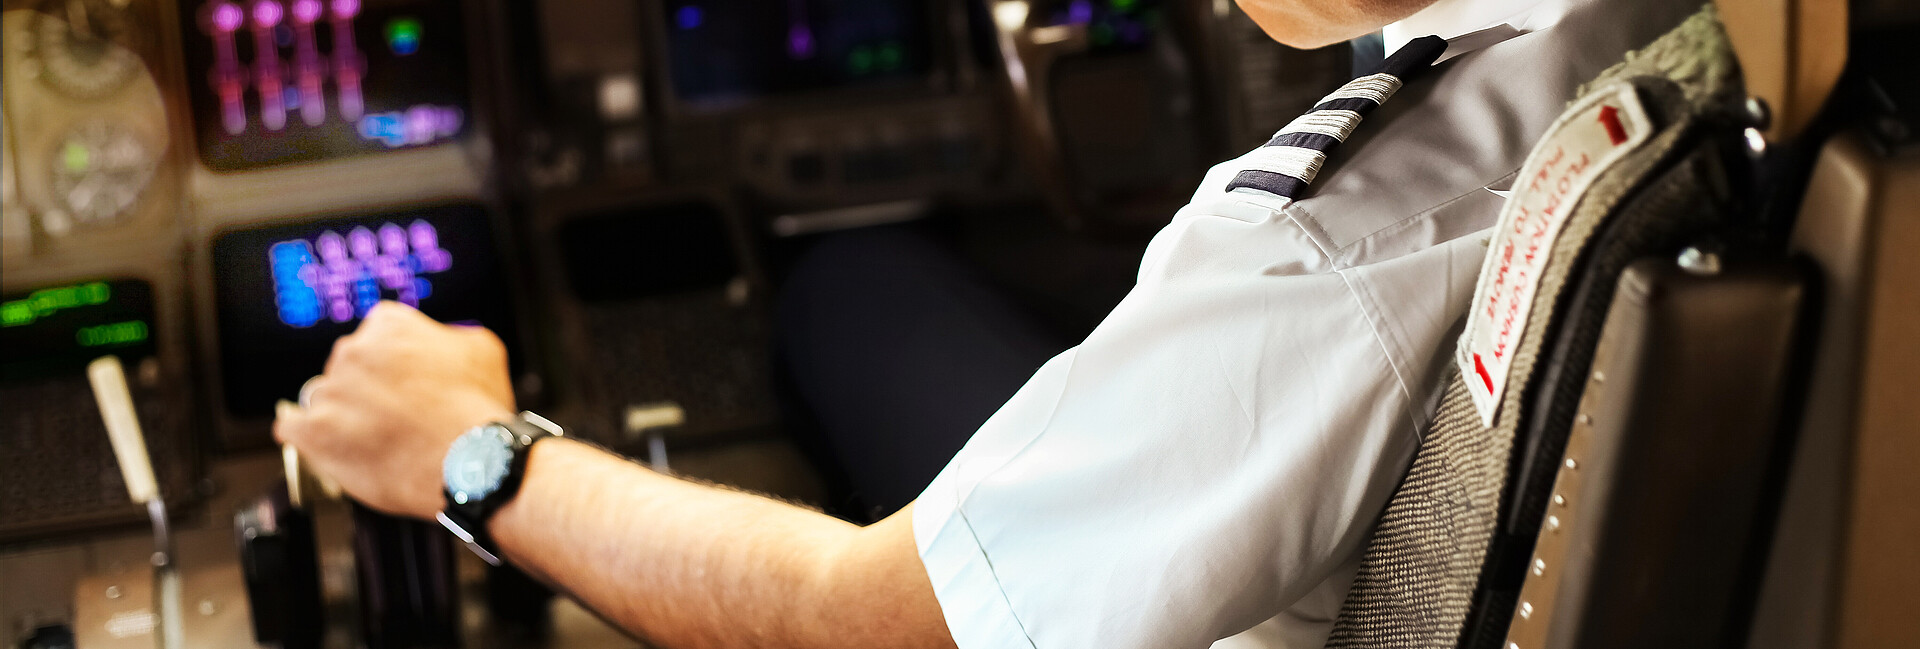 Bild zeigt Pilot im Cockpit